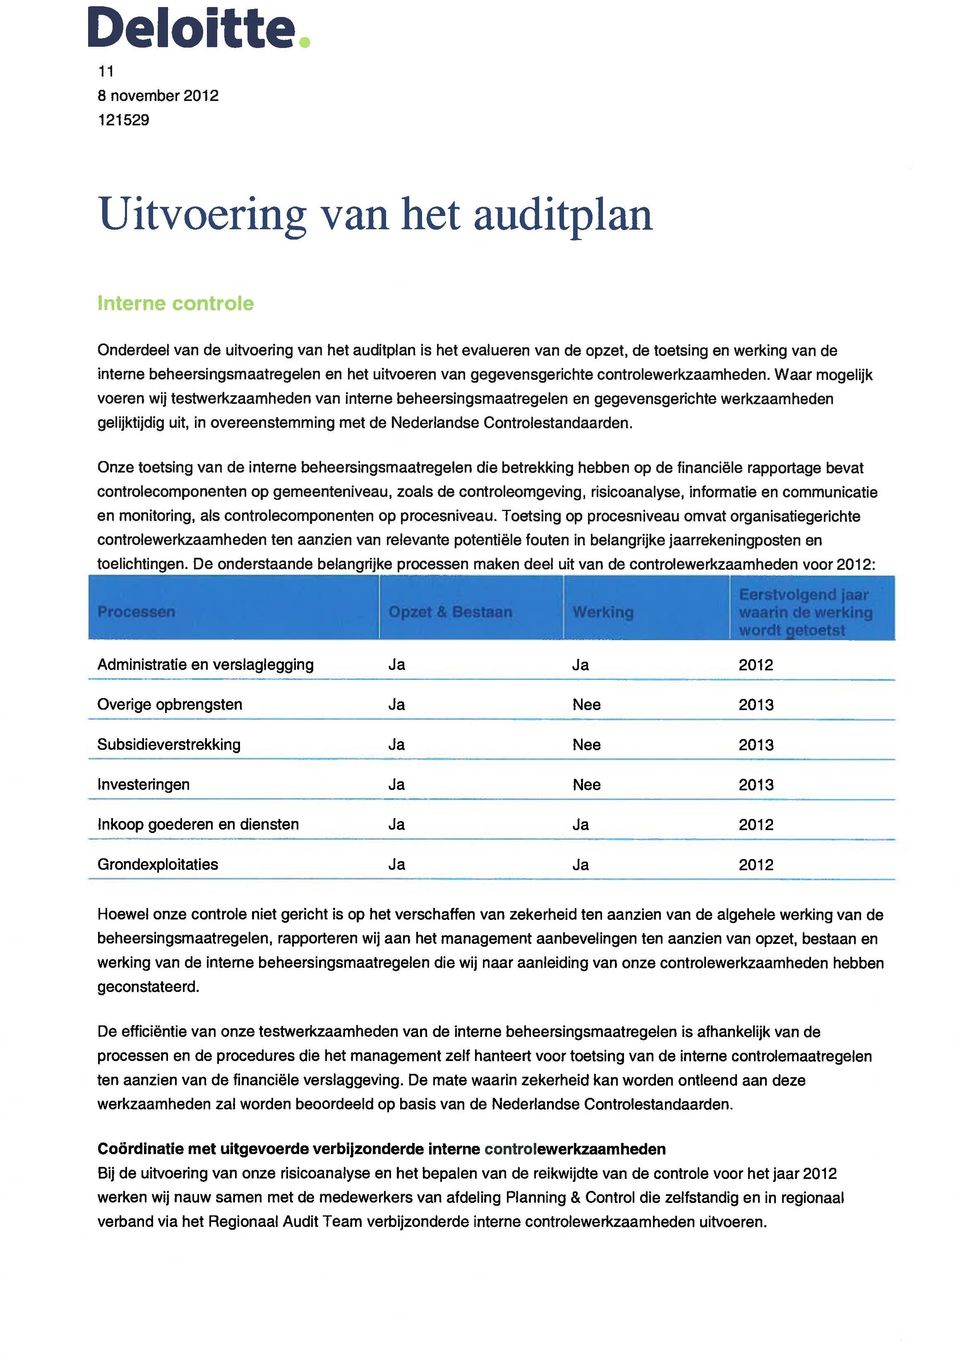 Waar mogolijk voeren wij testwerkzaamheden van interne beheorsingsmaatregelen en gegevensgerichte werkzaamheden gelijktijdig uit, in overeenstemming met de Nederlandse Controlestandaarden.